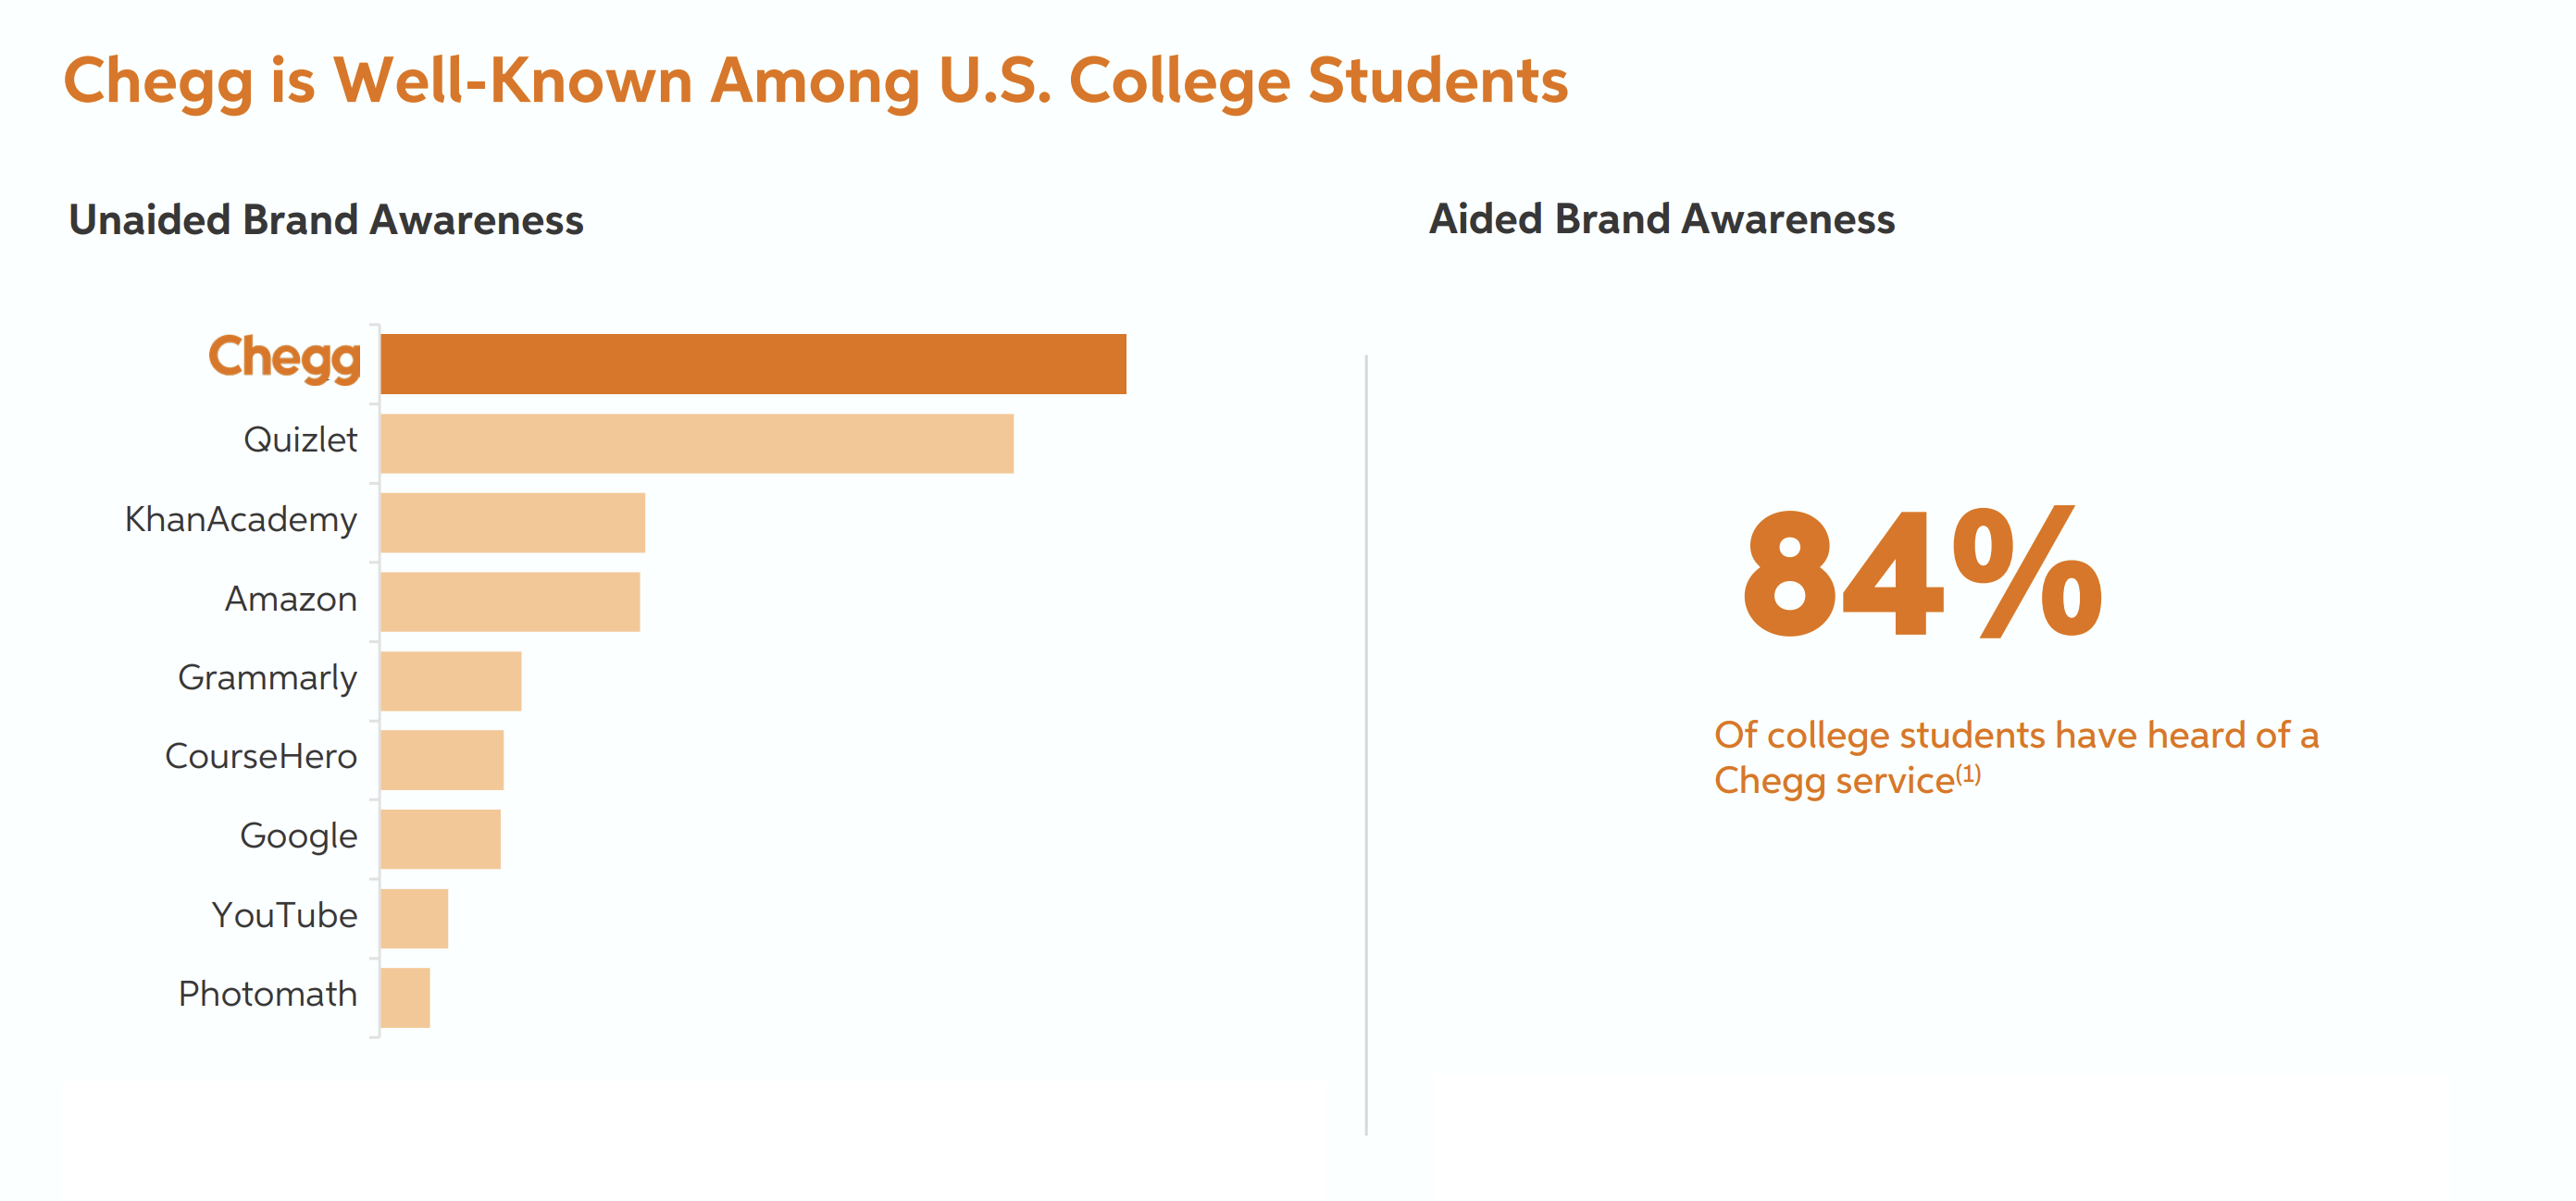 Chegg awareness among US college students